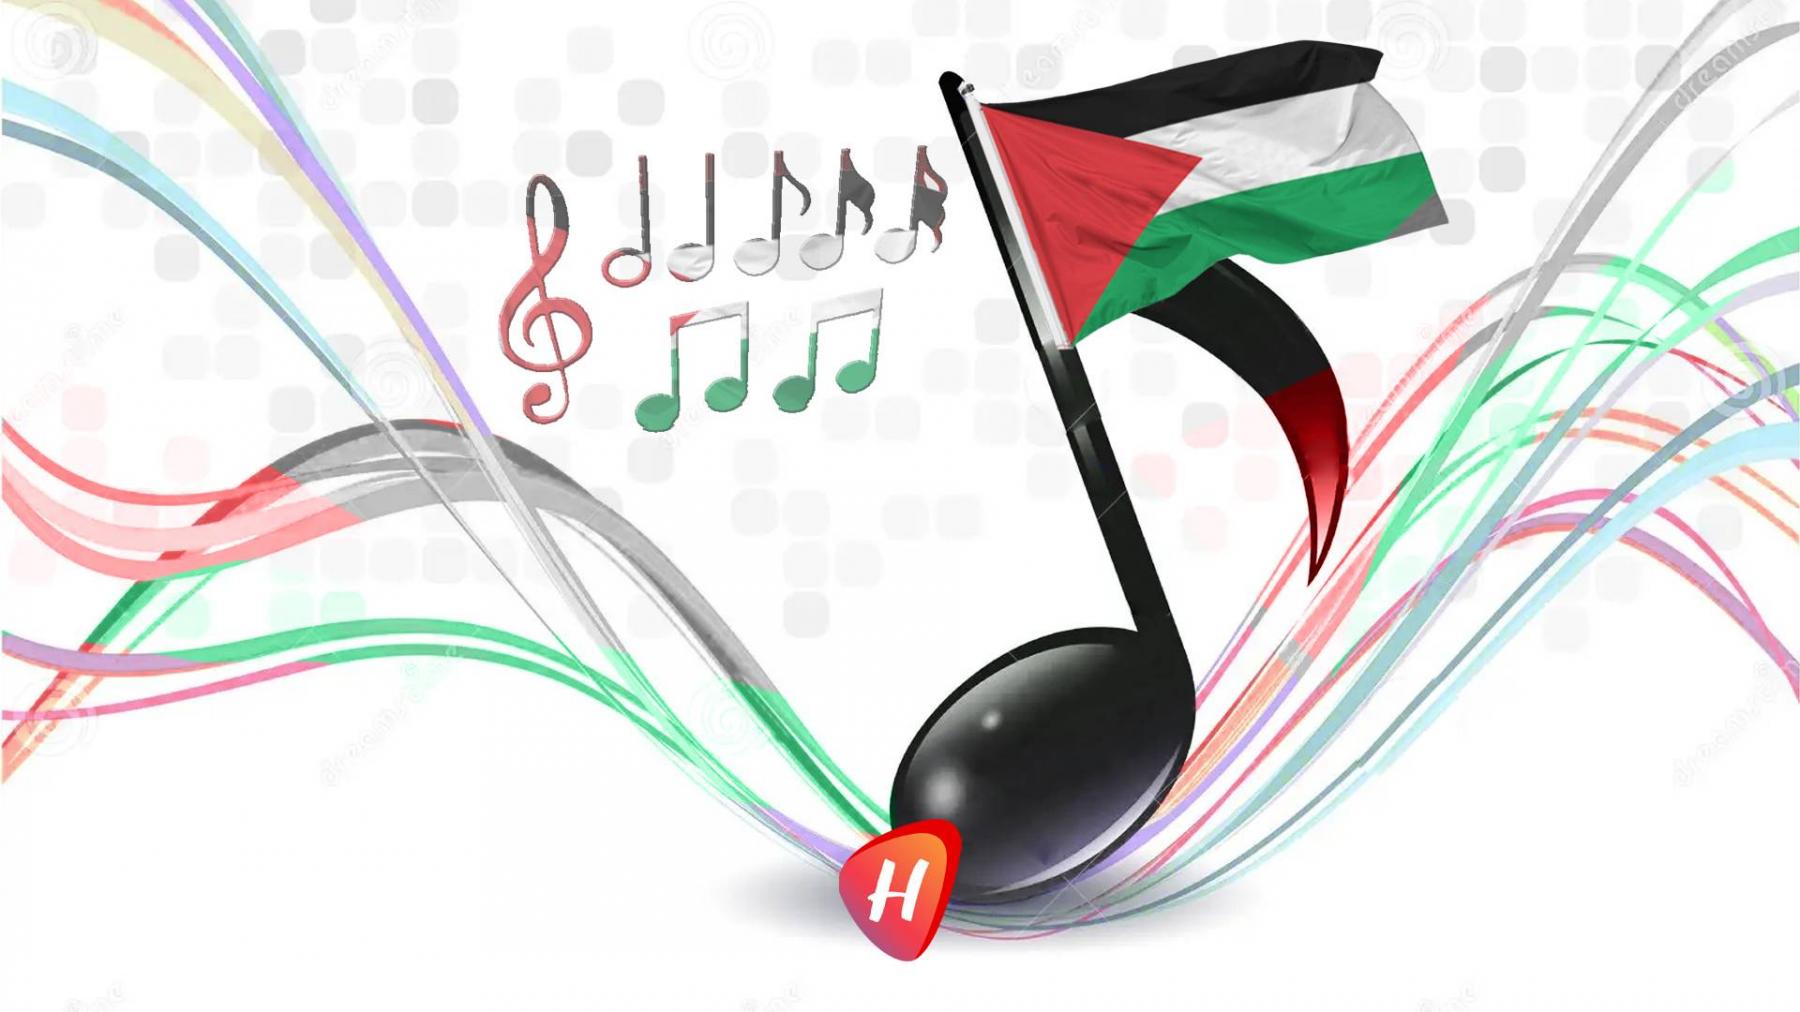 أشهر الأغنيات التي دعمت القضية الفلسطينية واستفزّت إسرائيل